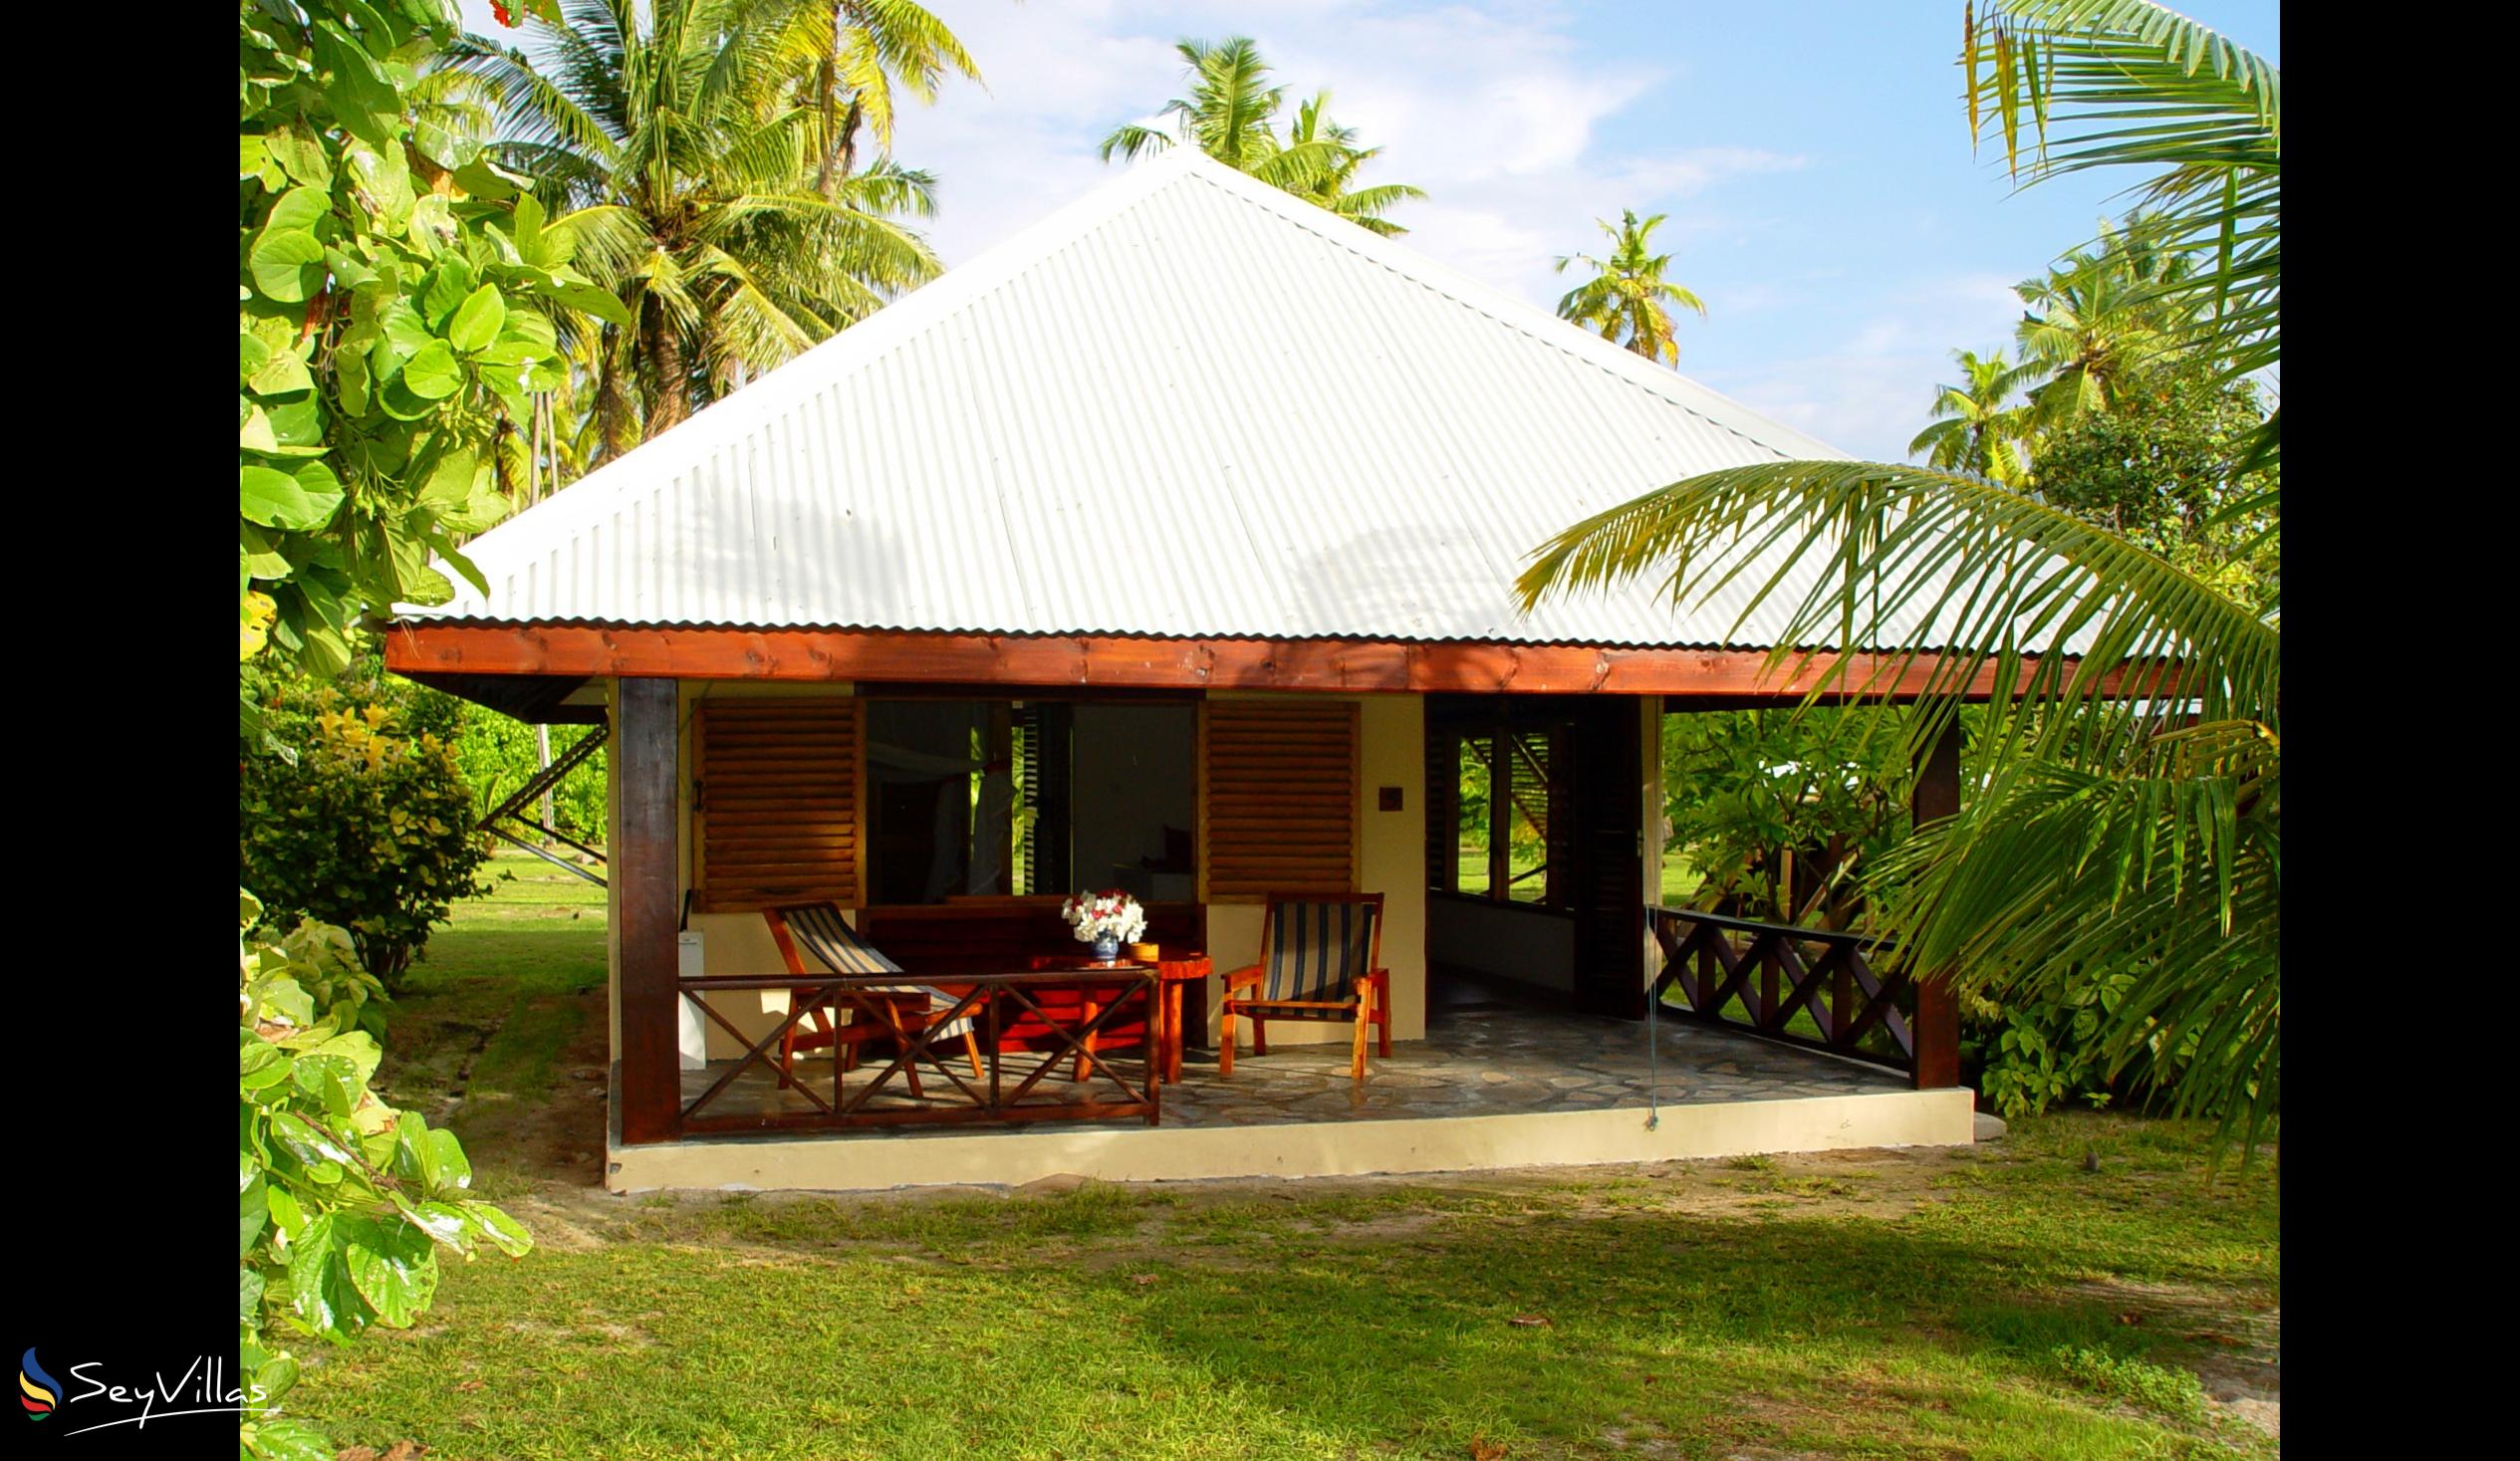 Foto 55: Bird Island Seychelles - Villa mit 3 Schlafzimmern - Bird Island (Seychellen)